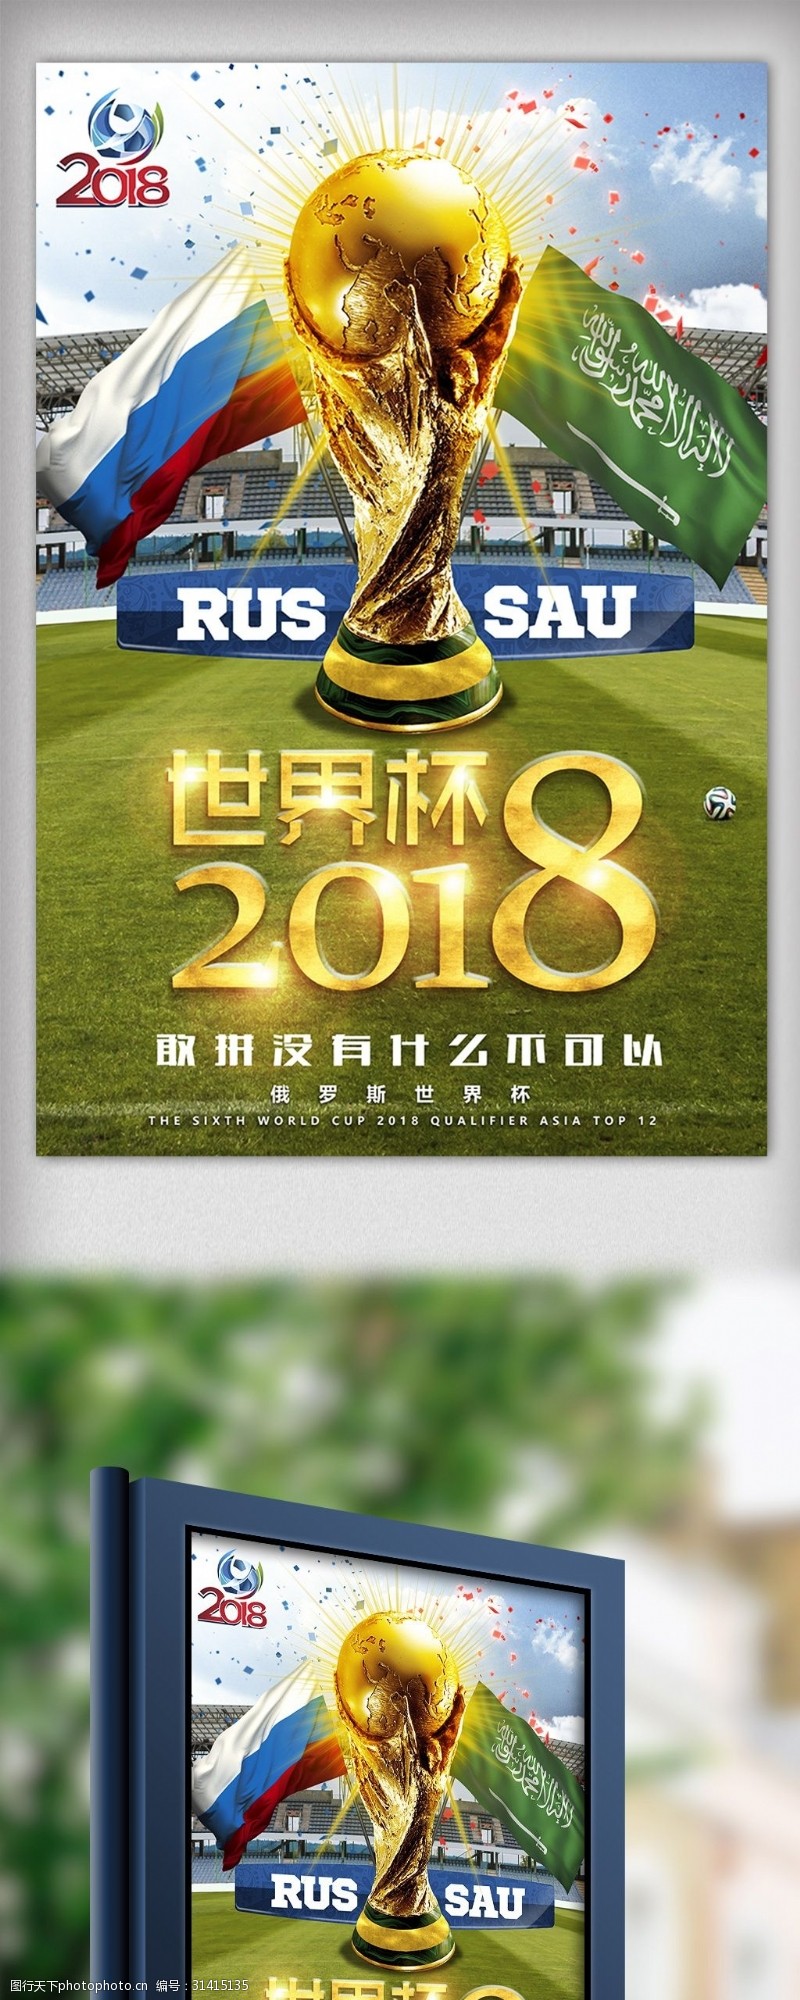 淘宝海报免费下载2018俄罗斯世界杯足球赛海报设计